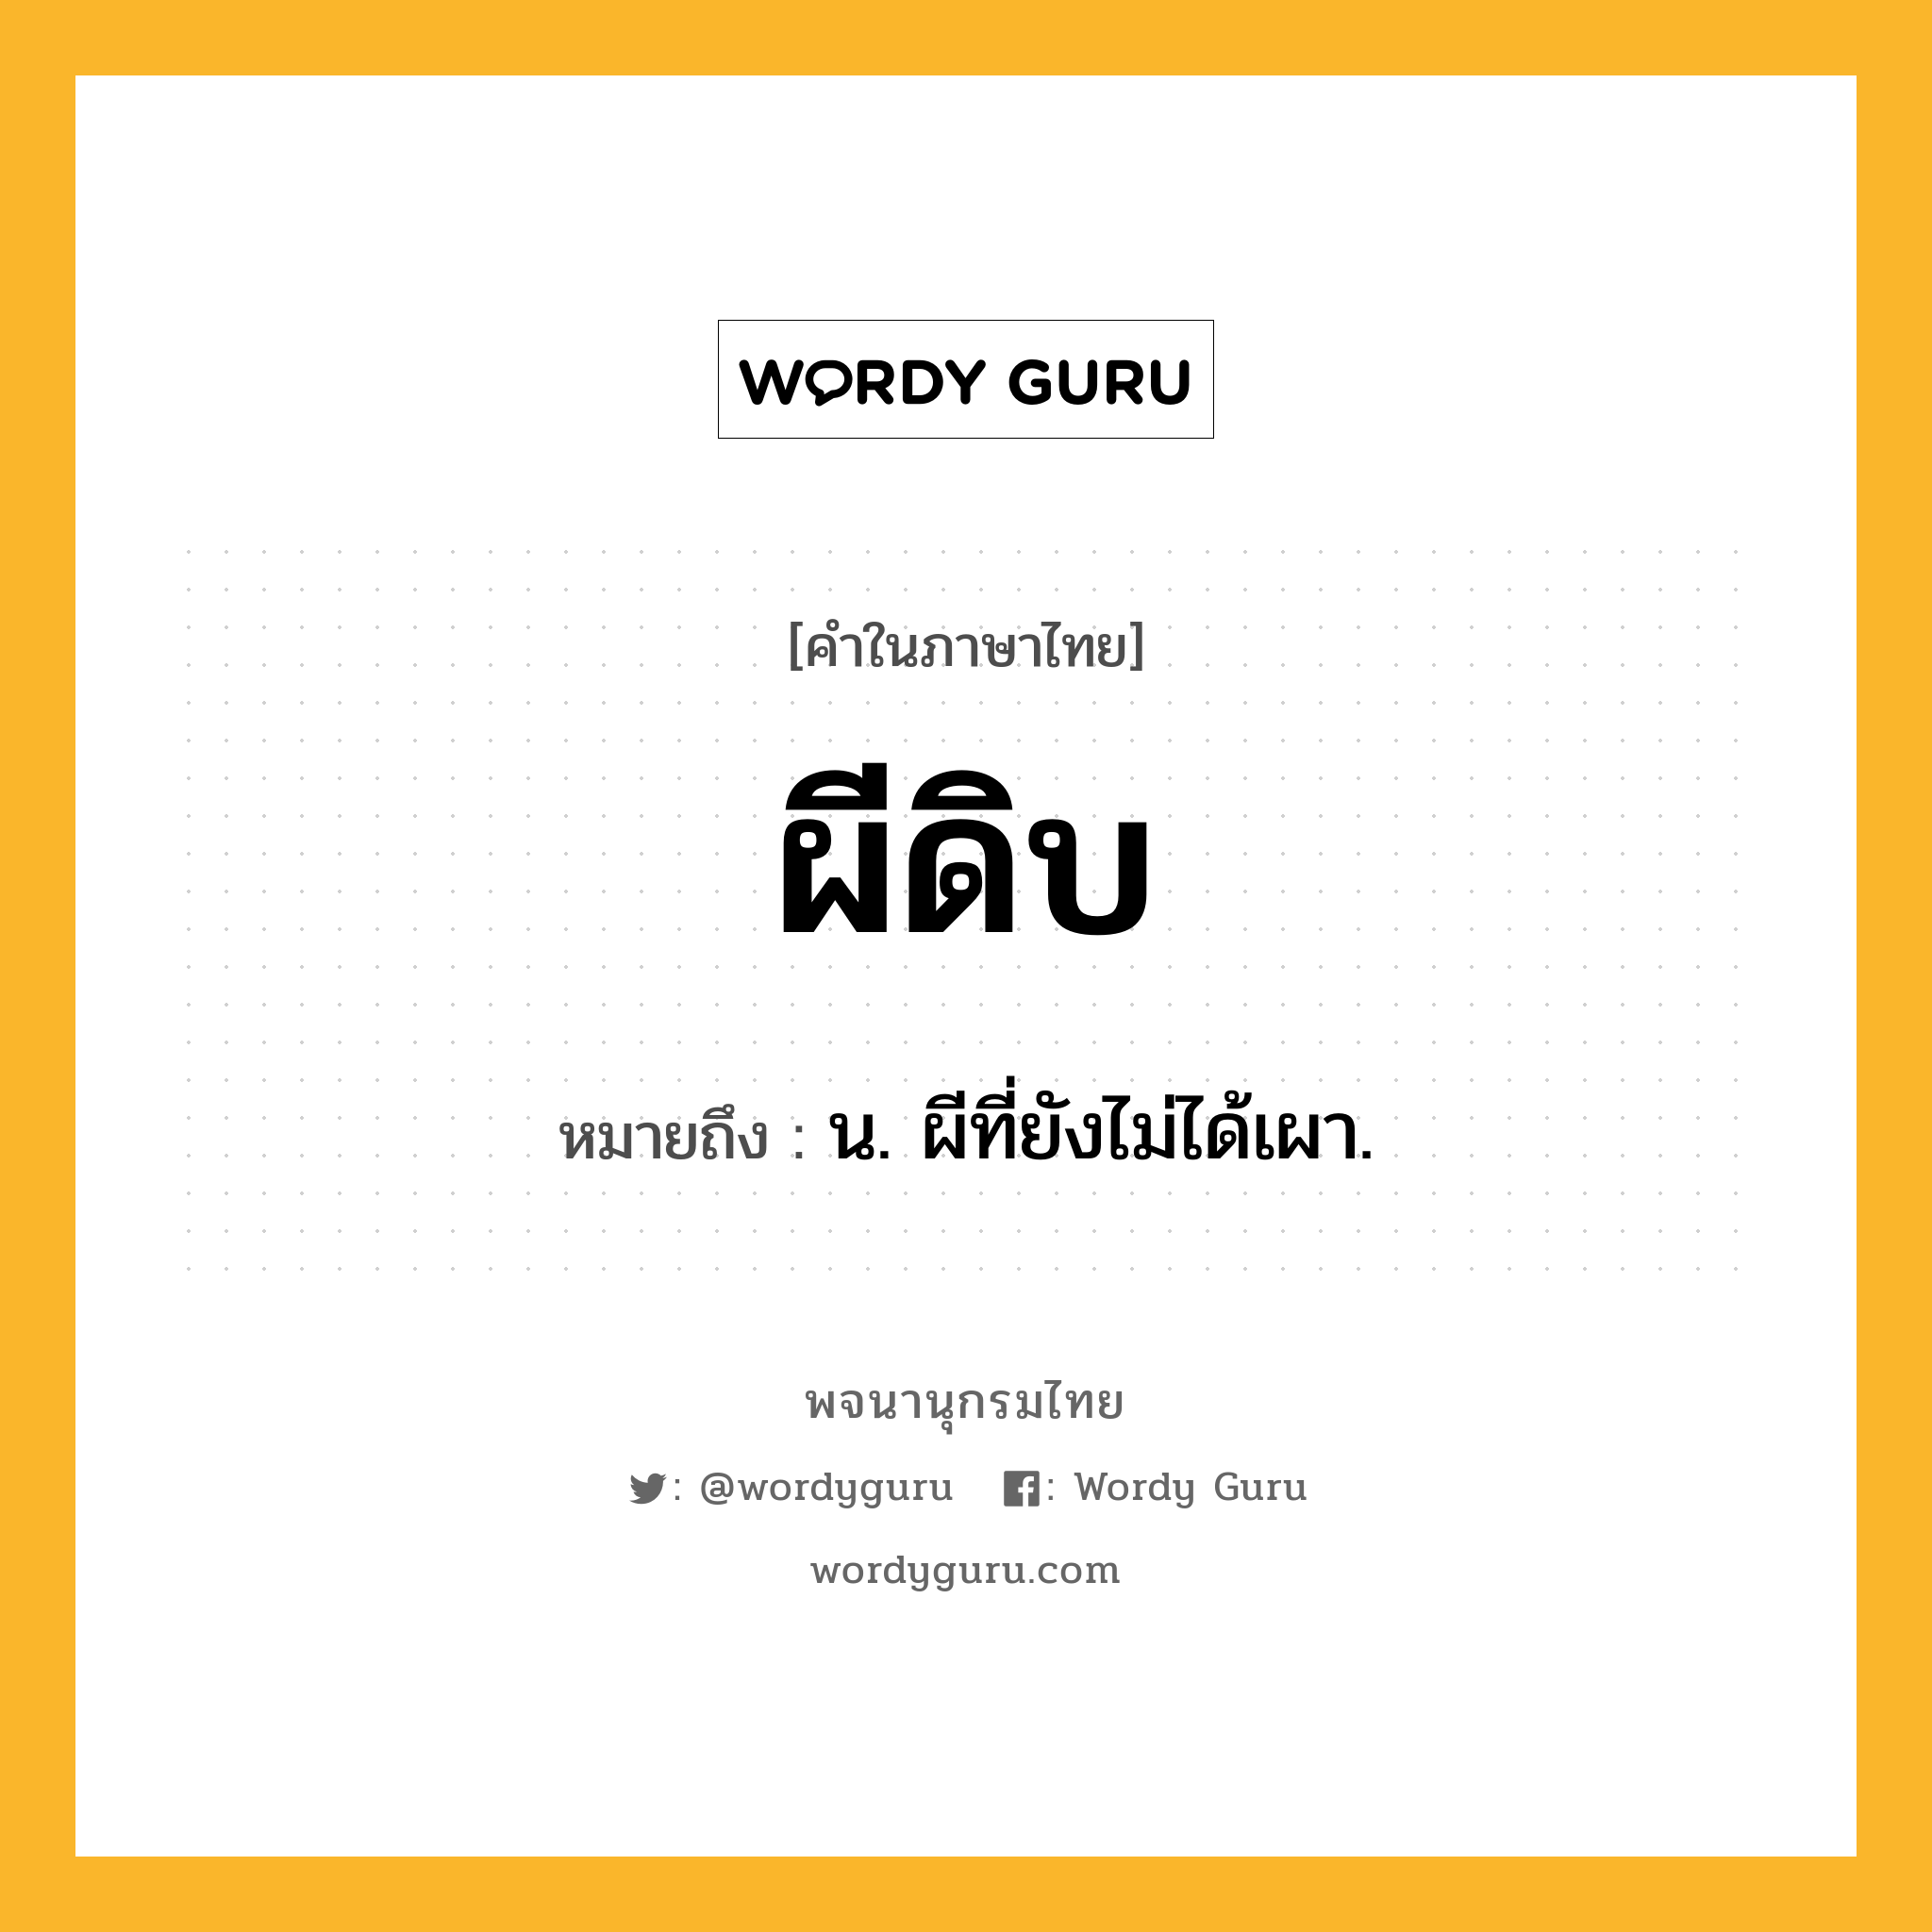 ผีดิบ หมายถึงอะไร?, คำในภาษาไทย ผีดิบ หมายถึง น. ผีที่ยังไม่ได้เผา.